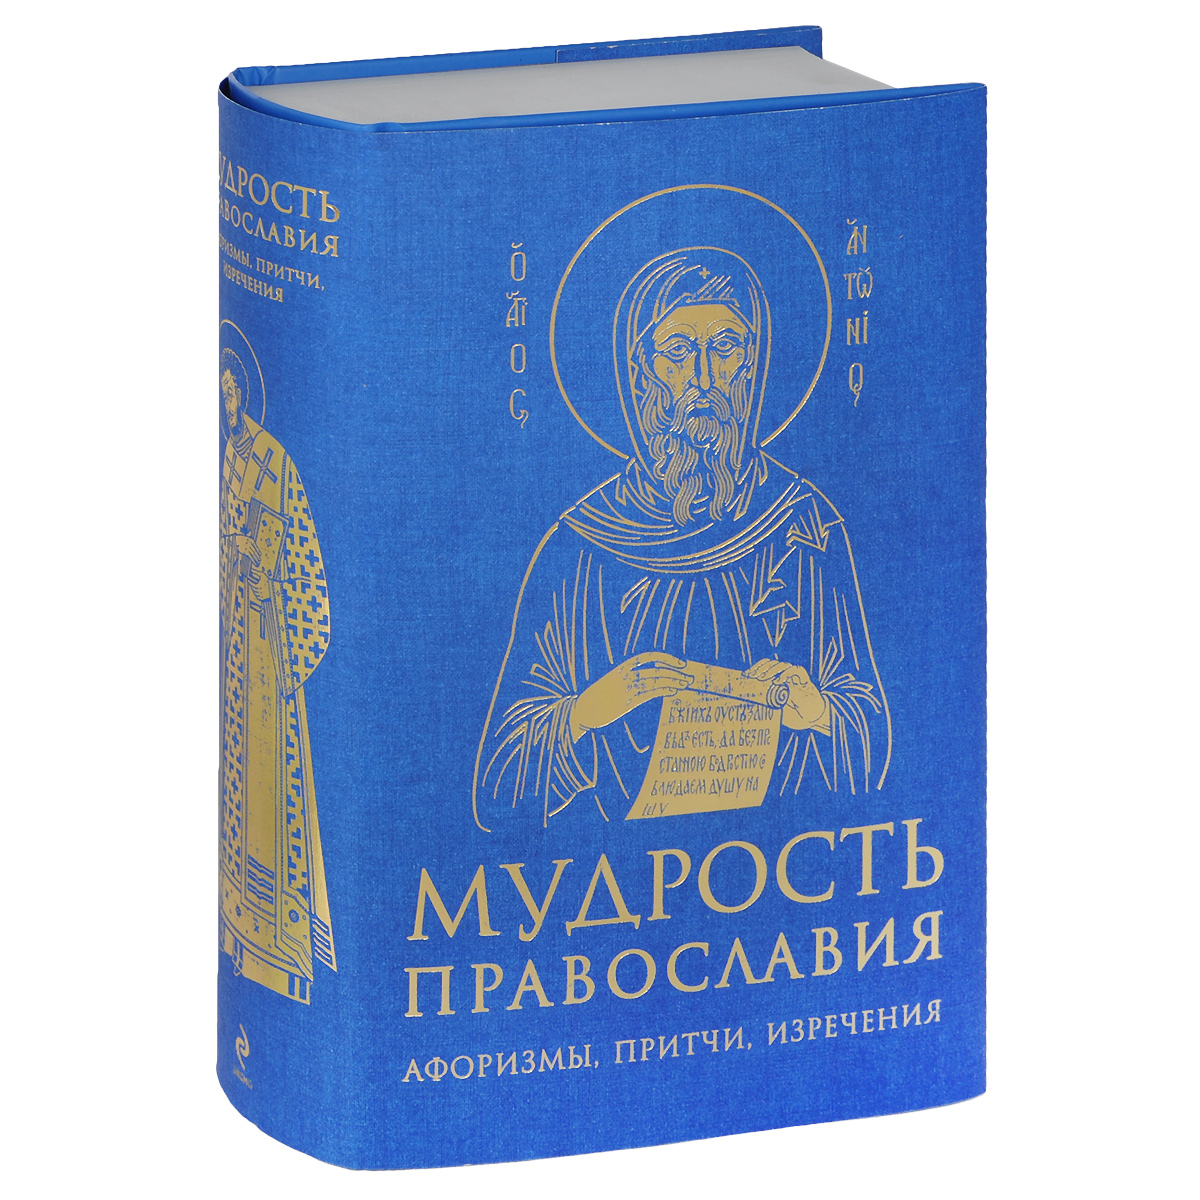 Мудрость православия. Афоризмы, притчи, изречения